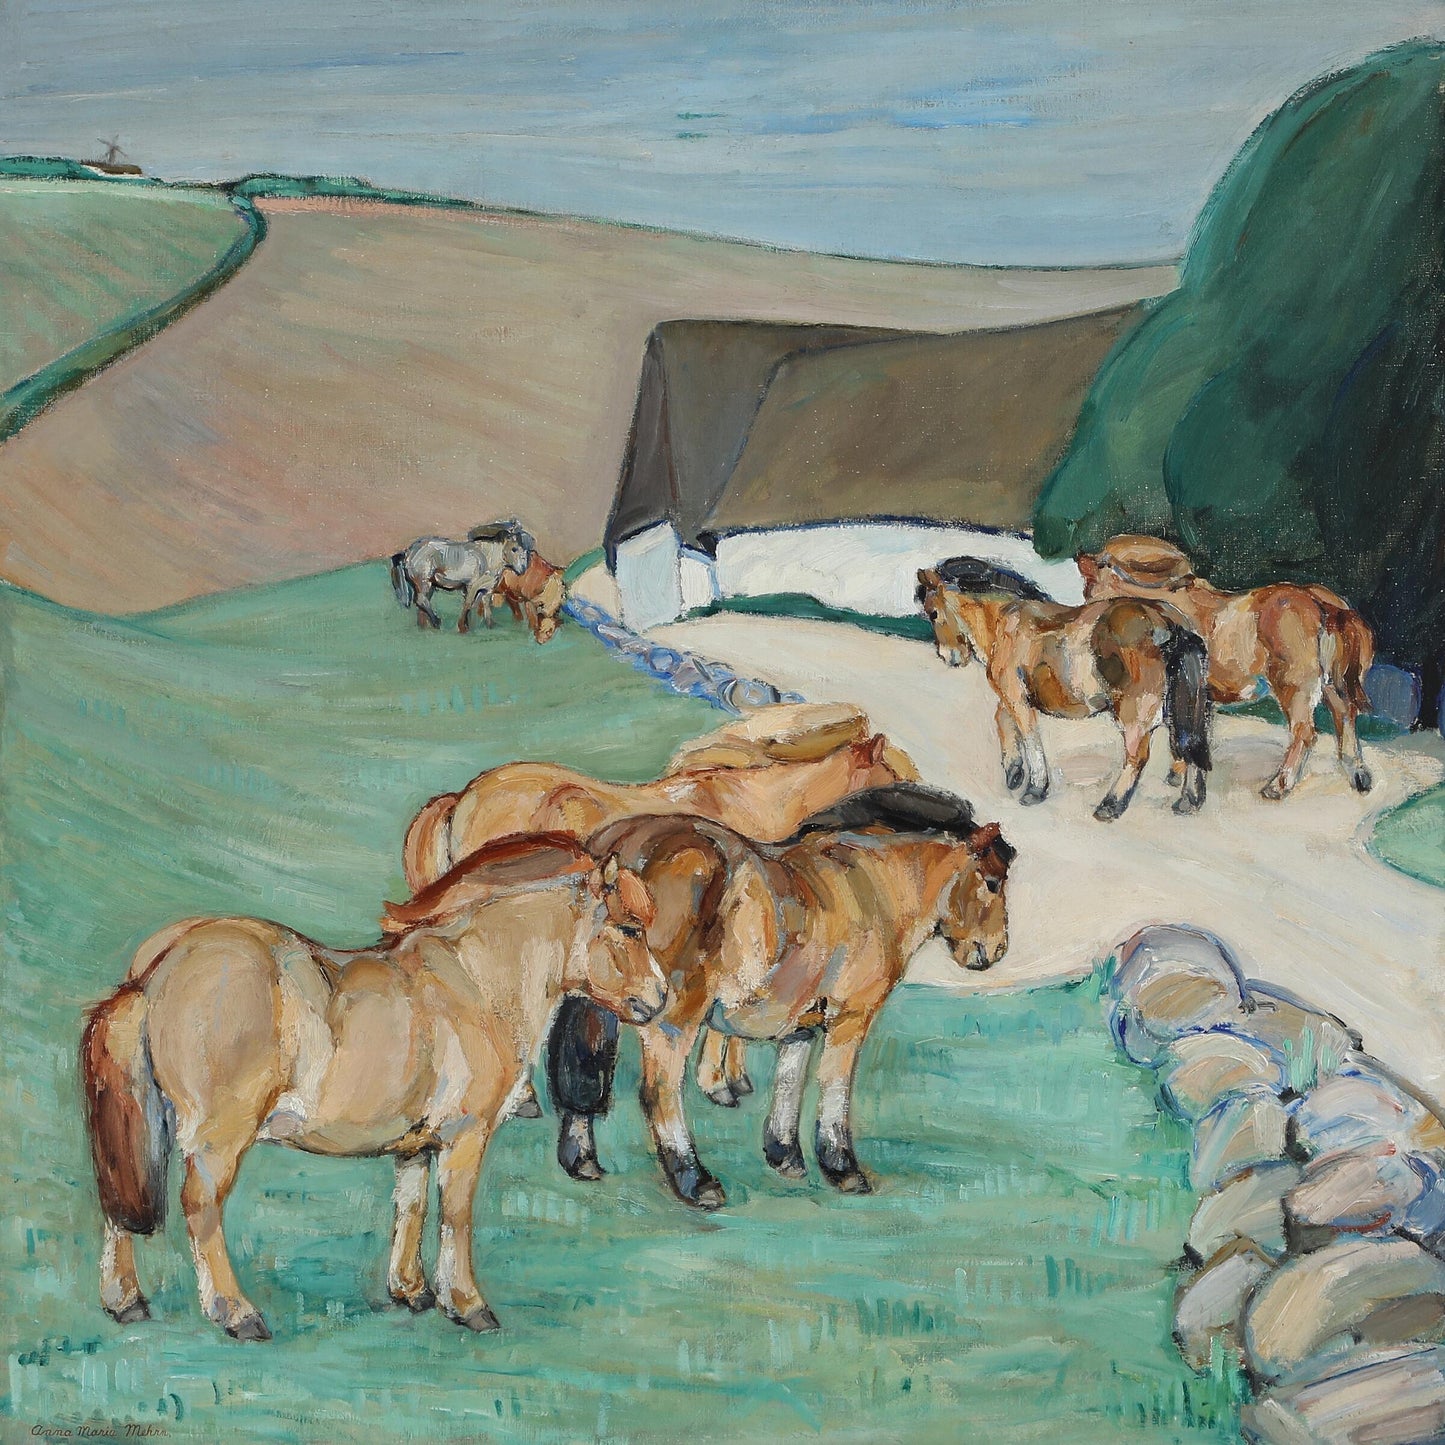 Anna Maria Mehrn. “Islandske heste udenfor en jysk bondegård”, 1917